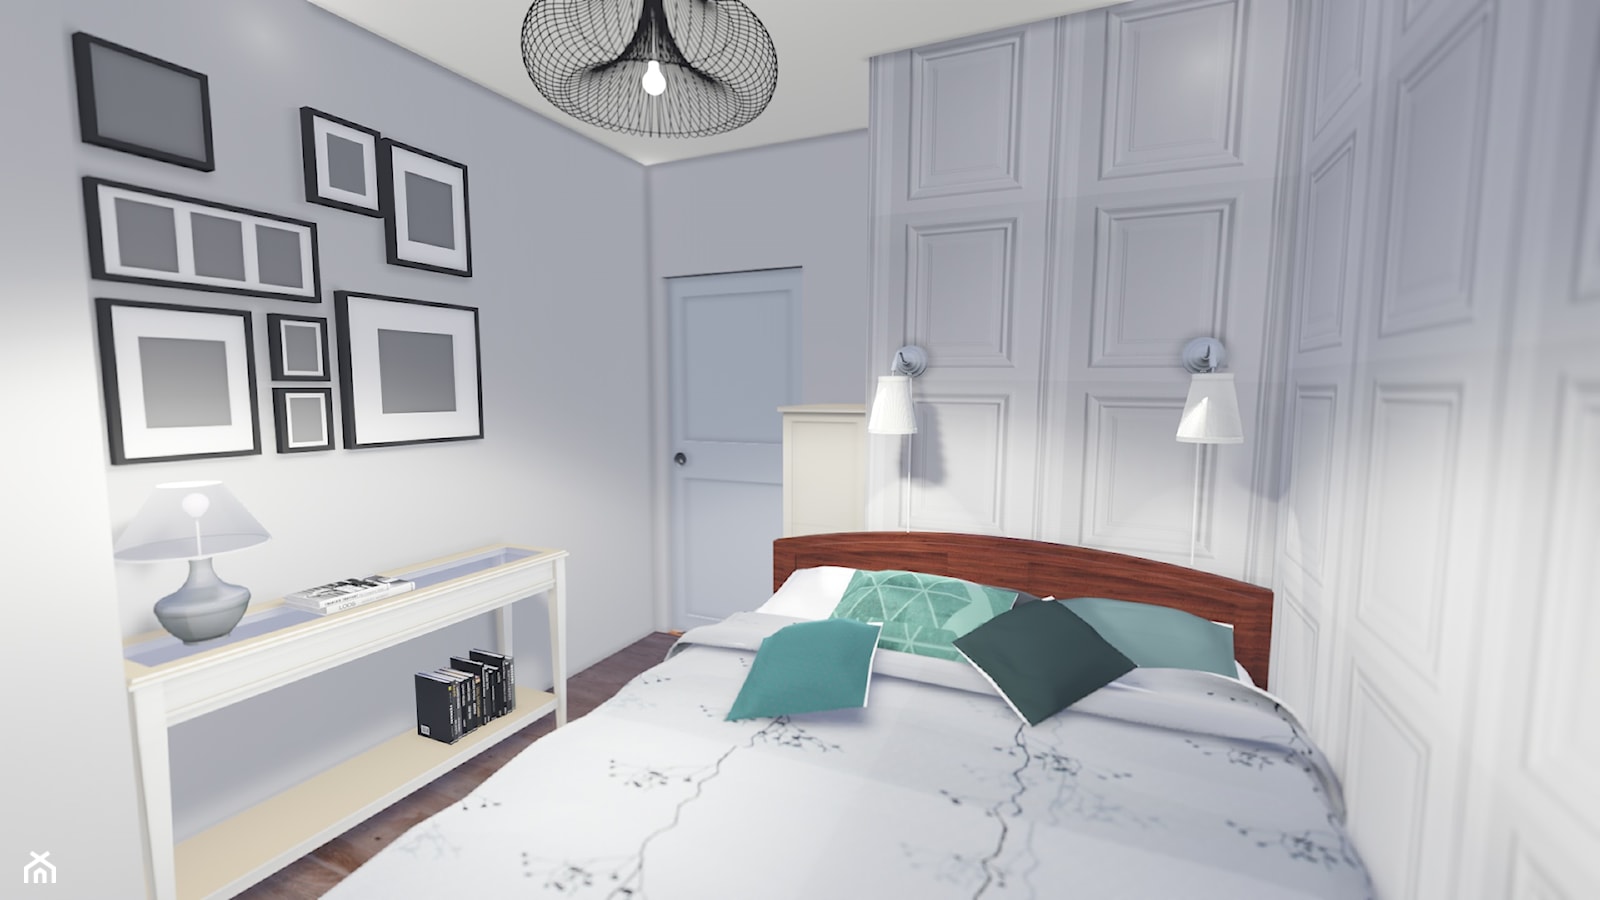 WHITE DREAM - BEDROOM - Sypialnia, styl rustykalny - zdjęcie od biscuit PROJEKT - Homebook